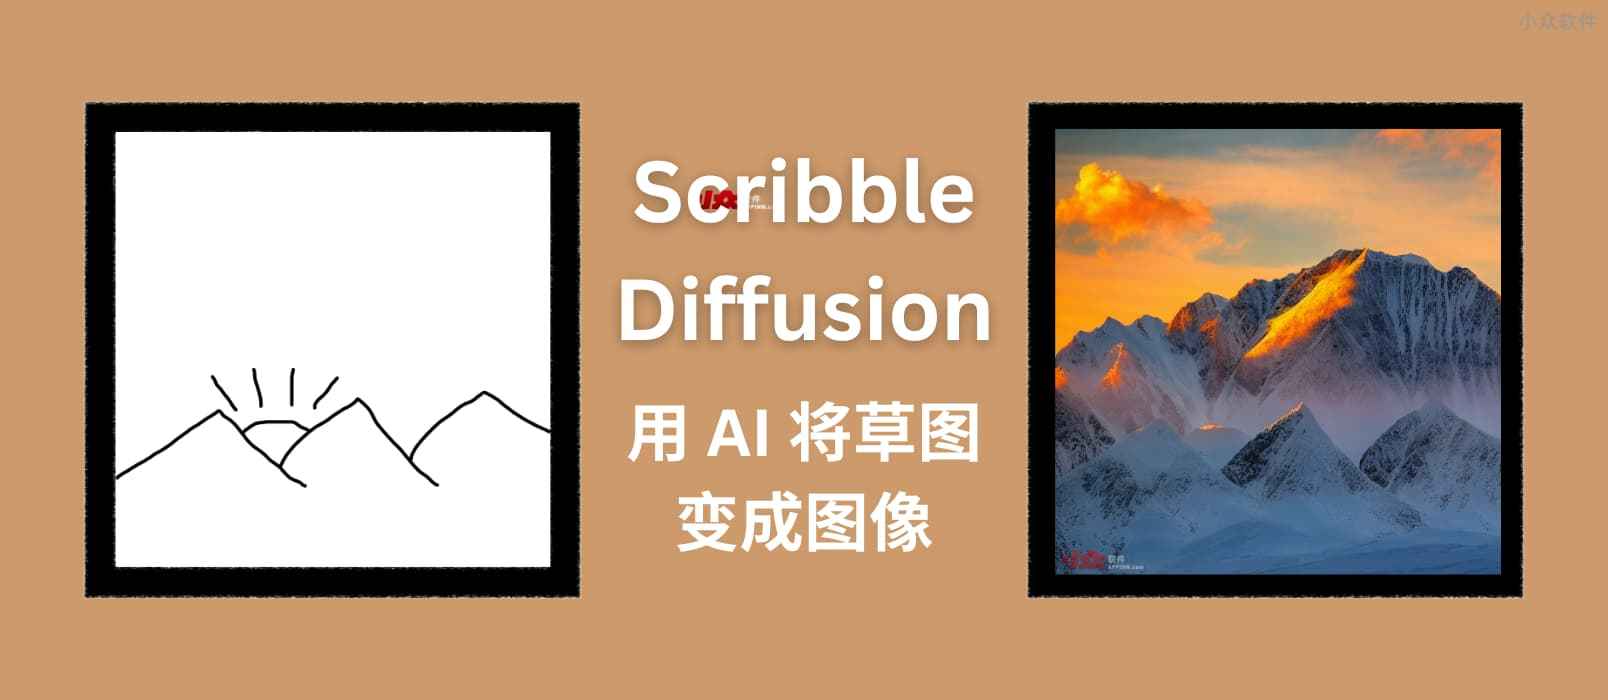 Scribble Diffusion – AI 画画，将手绘草稿转换为图片，基于 ControlNet，太搞笑了